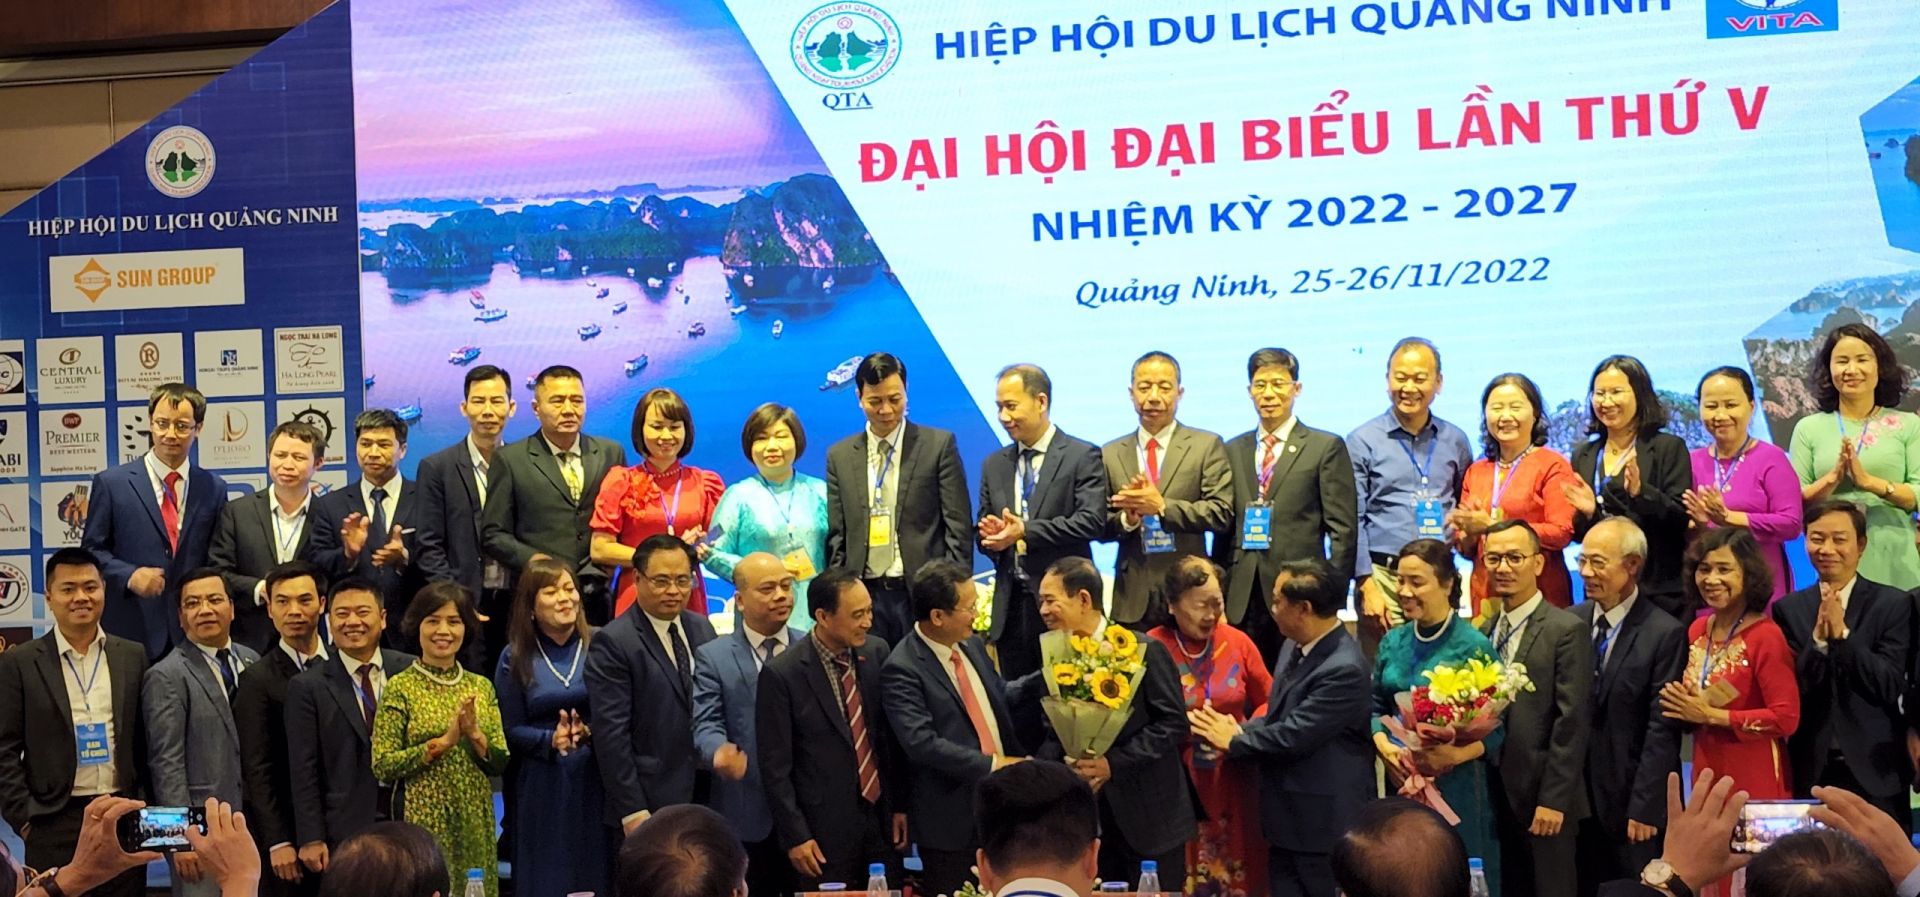 38 đồng chí trong Ban chấp hành mới của hiệp hội du lịch tỉnh Quảng Ninh  ra mắt và nhận hoa chíc mừng